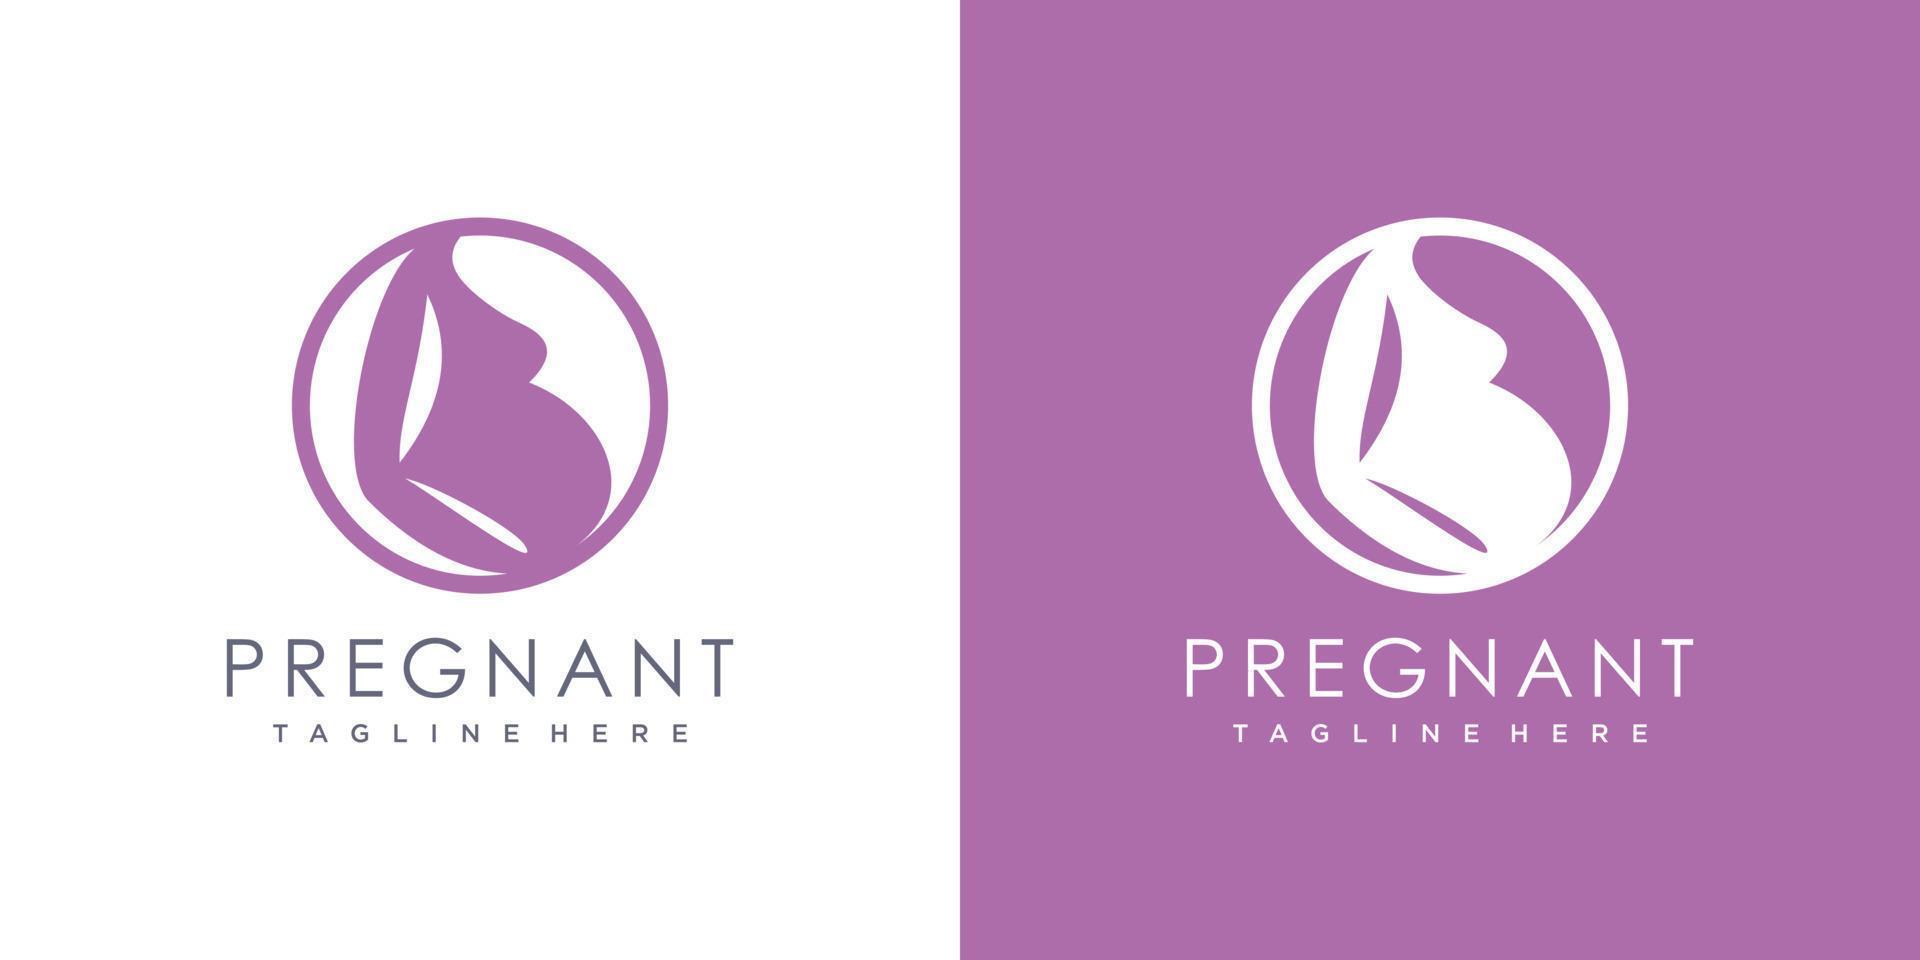 diseño de logotipo embarazada con vector premium de estilo único moderno